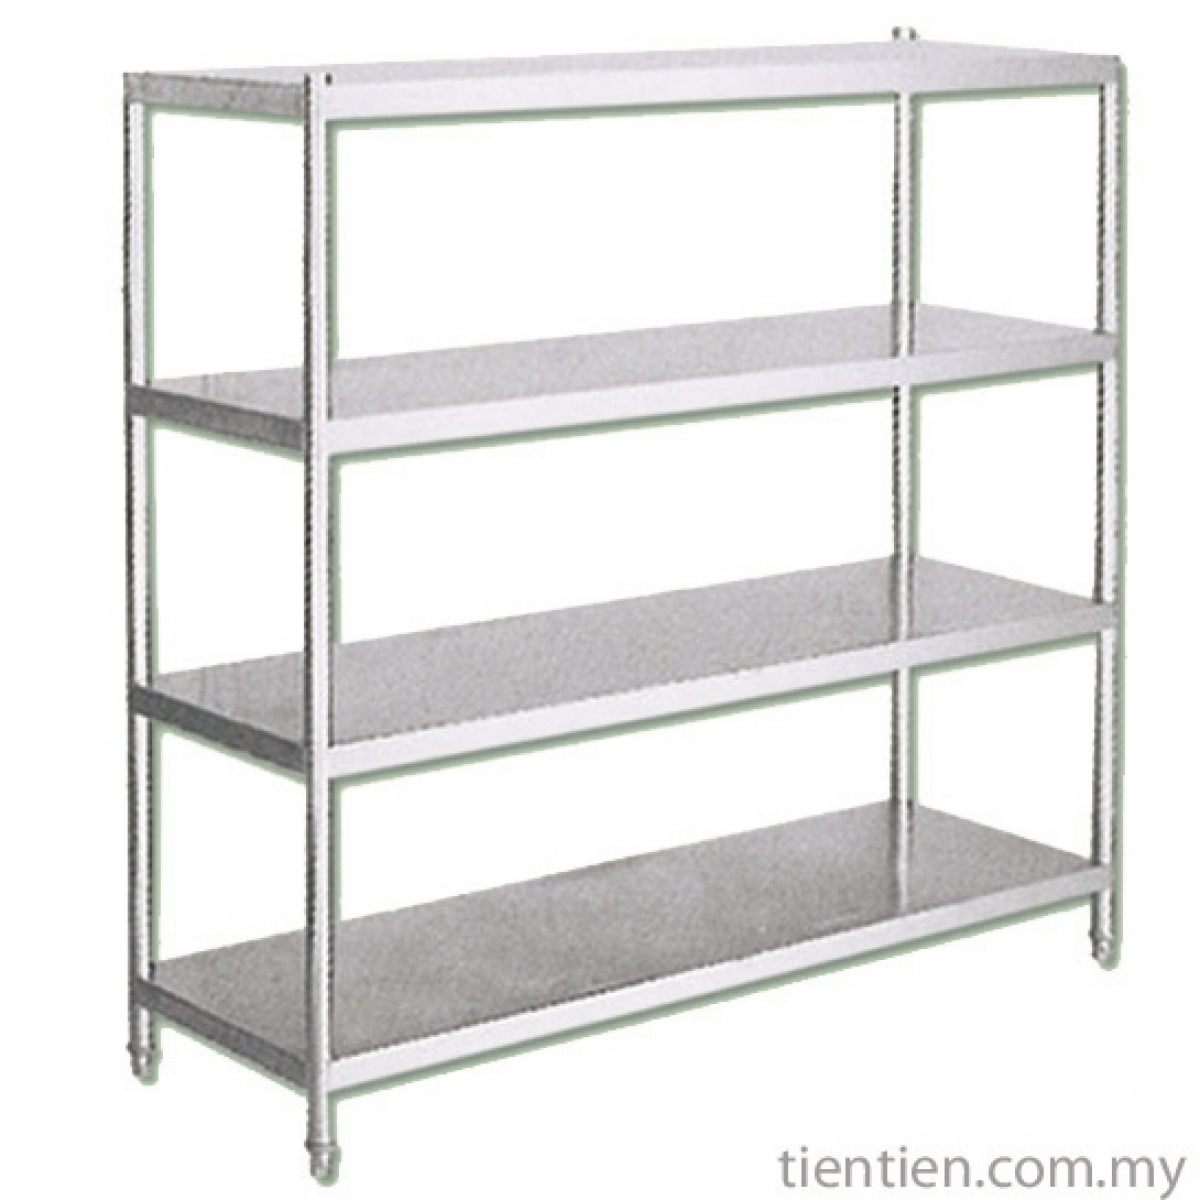 TIEN TIEN Stainless Steel 4 tier Rack with Solid Shelf